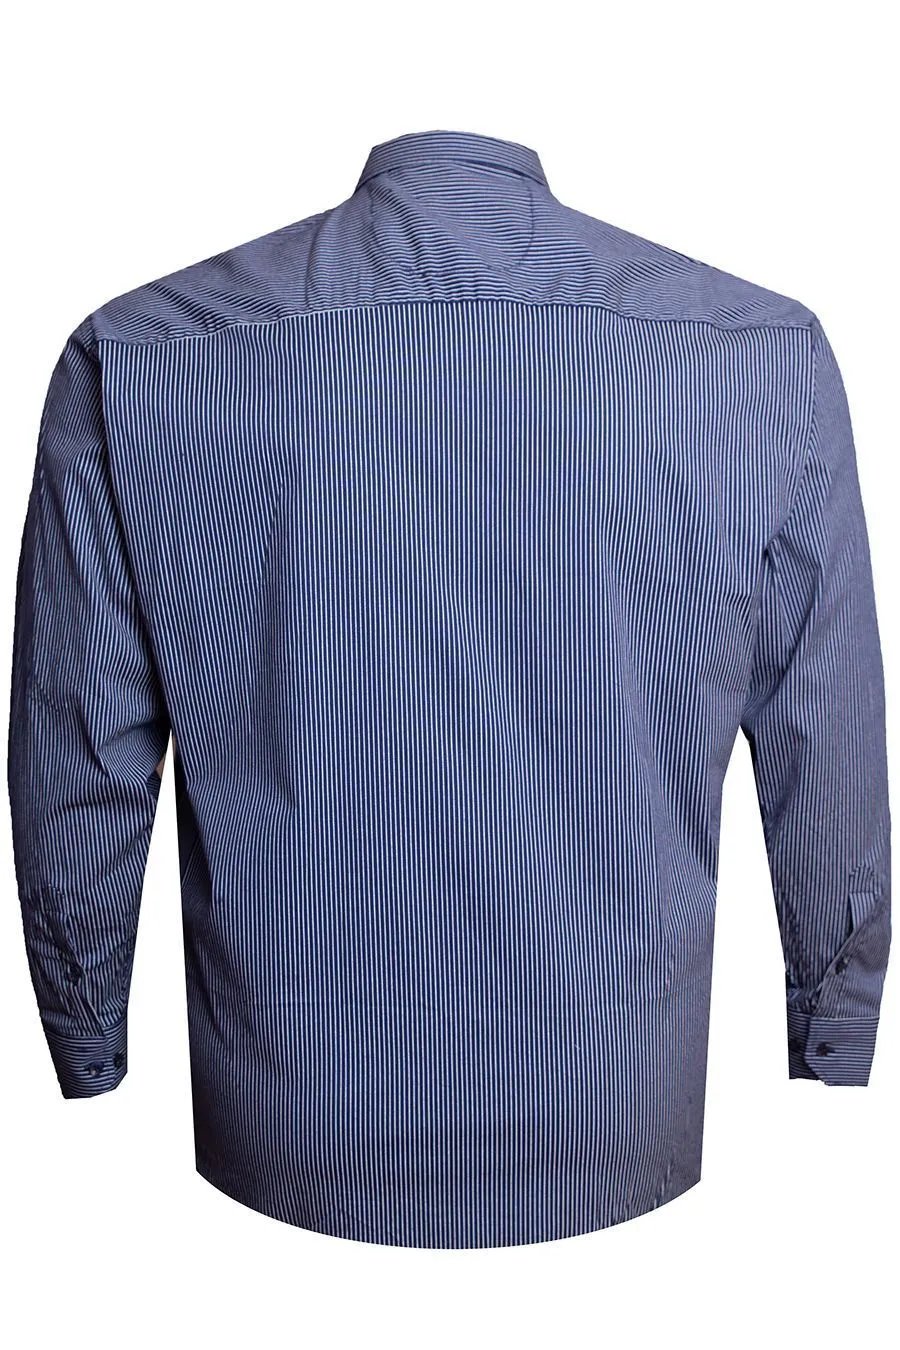 Рубашка Gastelli синяя, в белую полоску большого размера